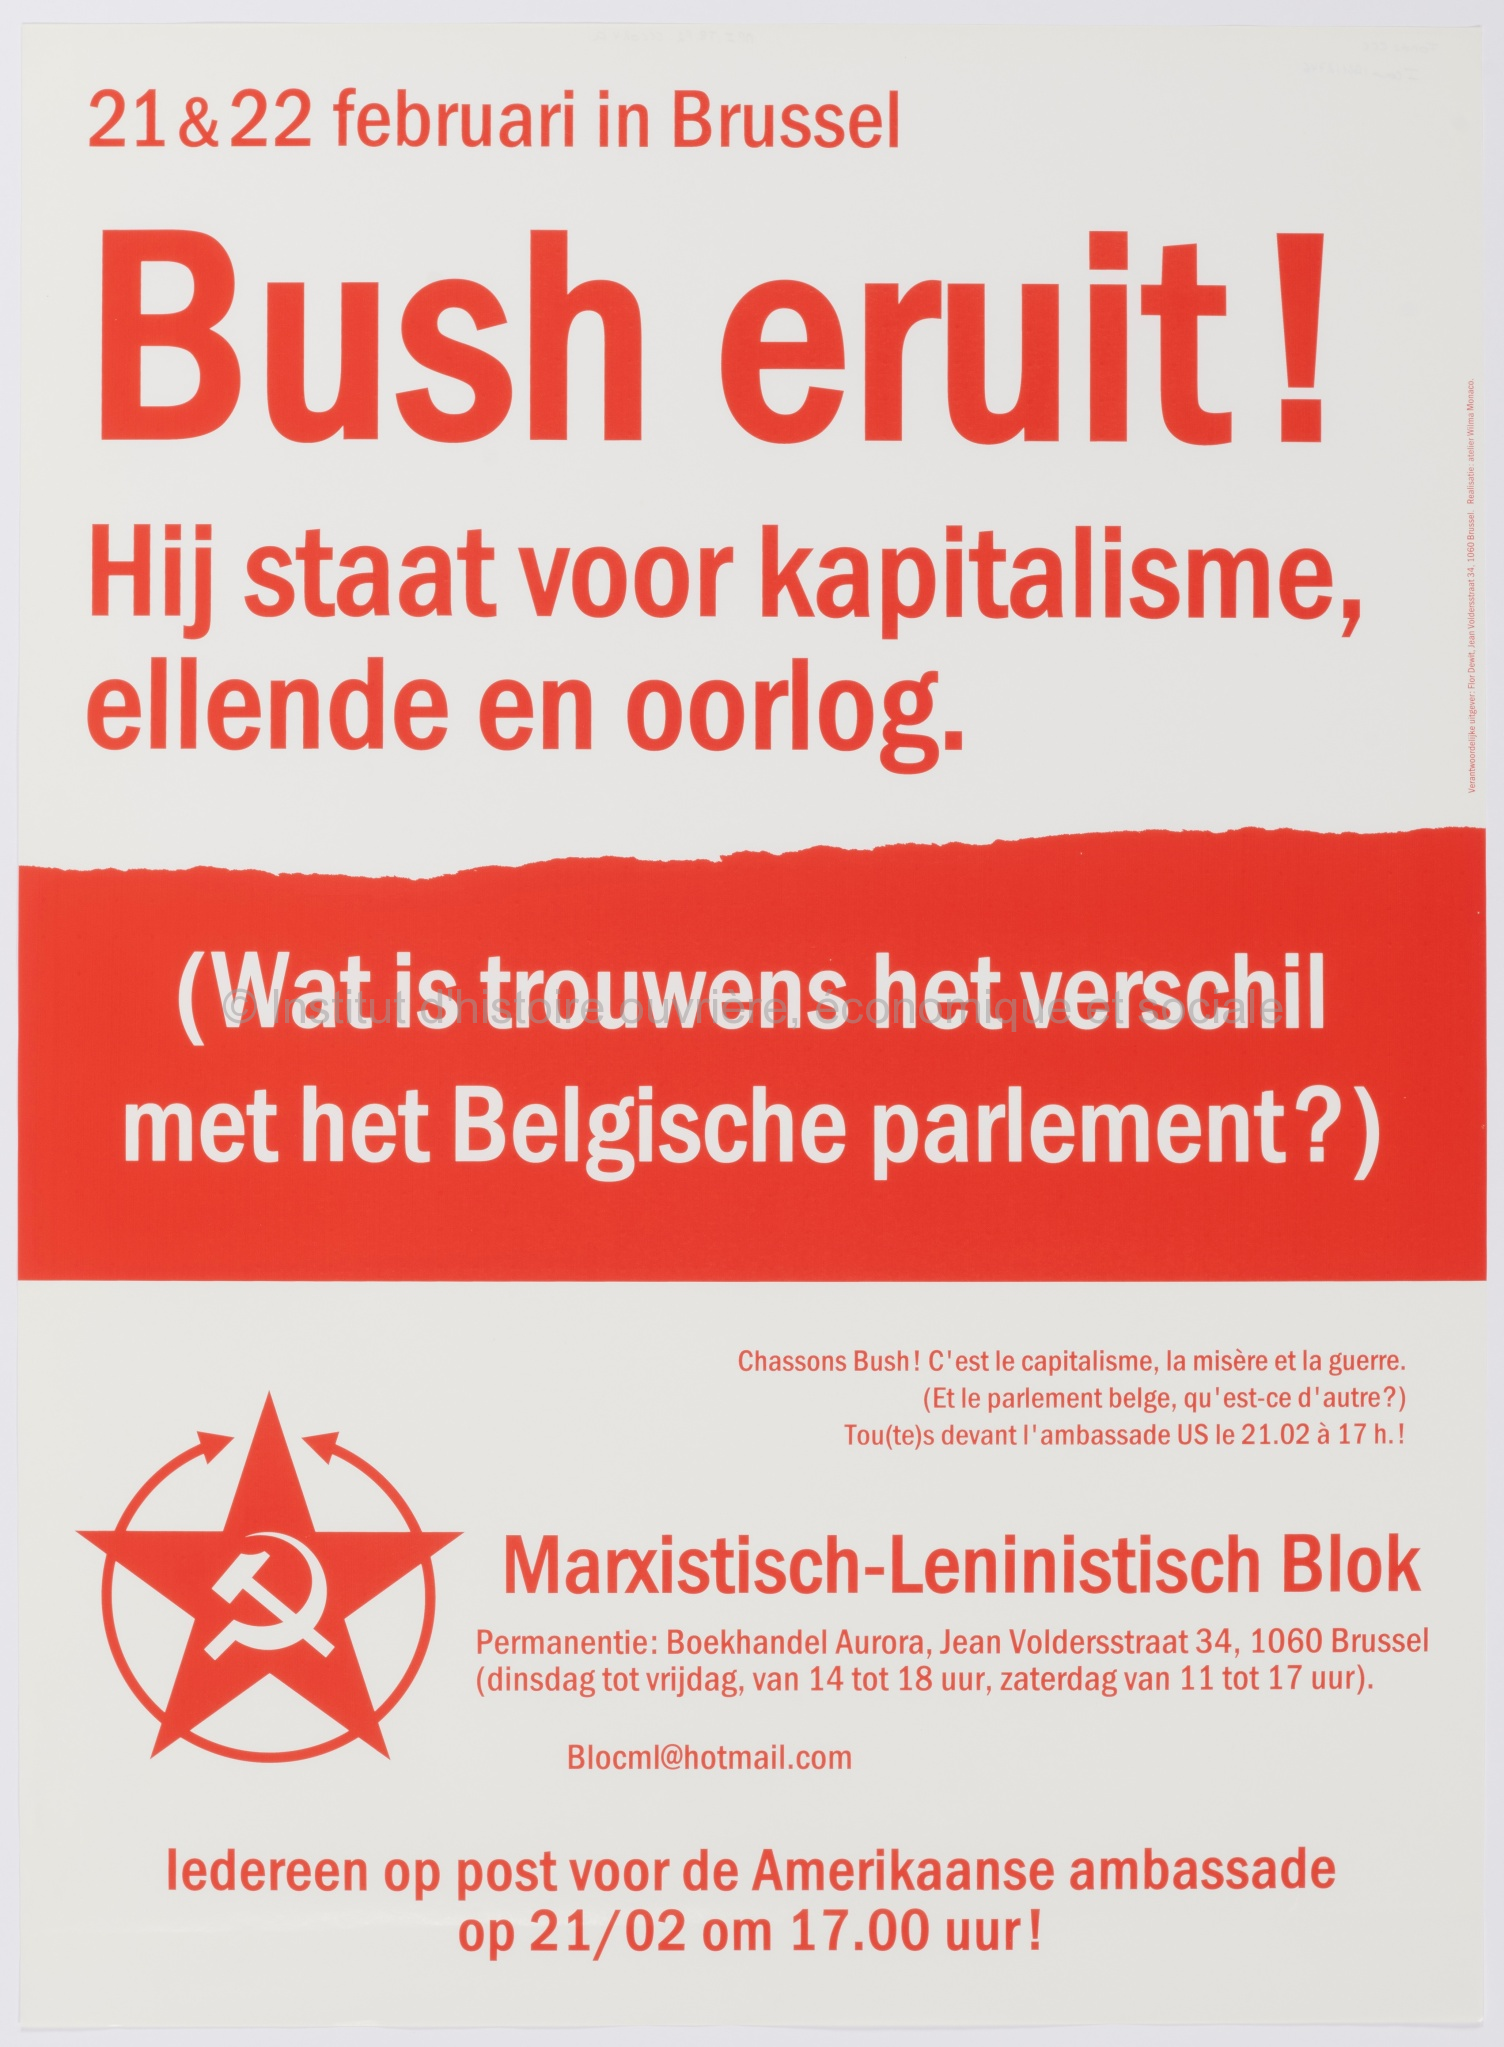 Bush eruit ! Hij staat voor kapitalisme, ellende en oorlog (wat is trouwens het verschil met het Belgische parlement ?) : 21 & 22 februari in Brussel